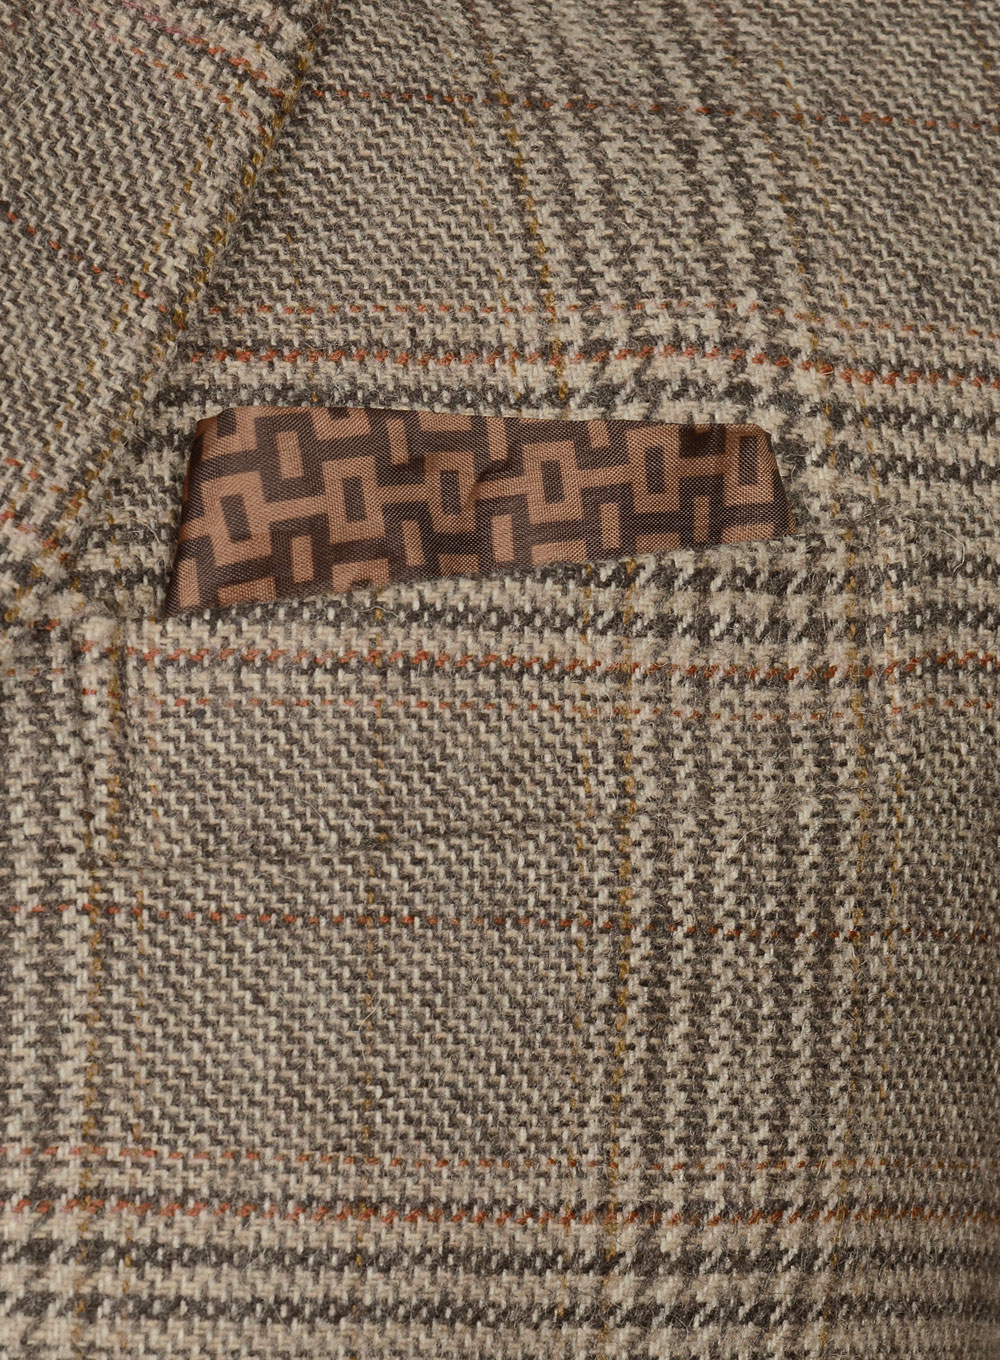 Vintage Brown Hardy Tweed Suit